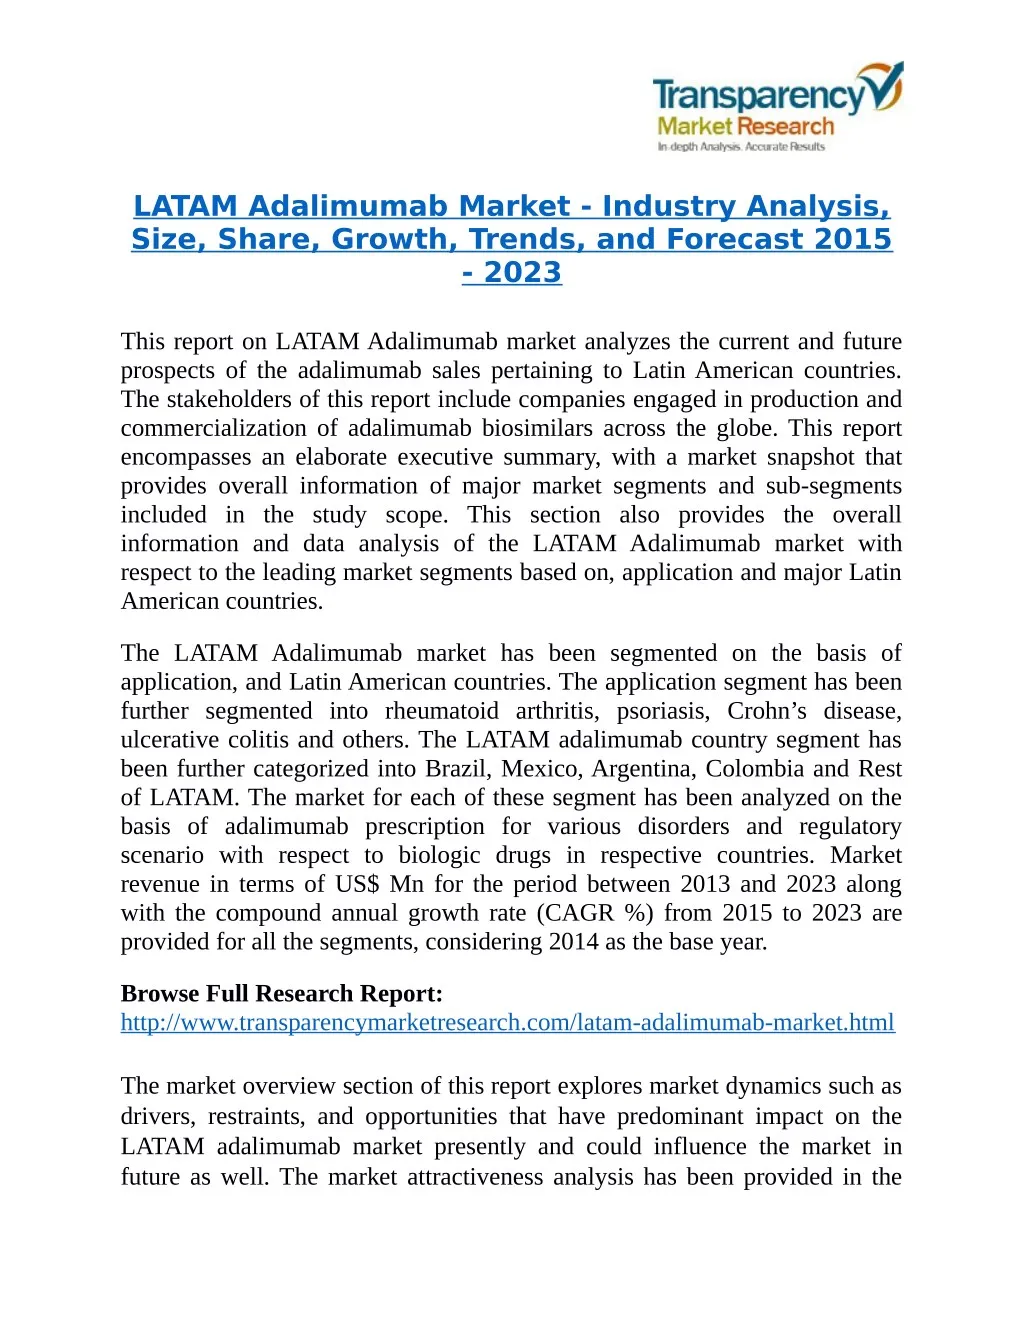 latam adalimumab market industry analysis size